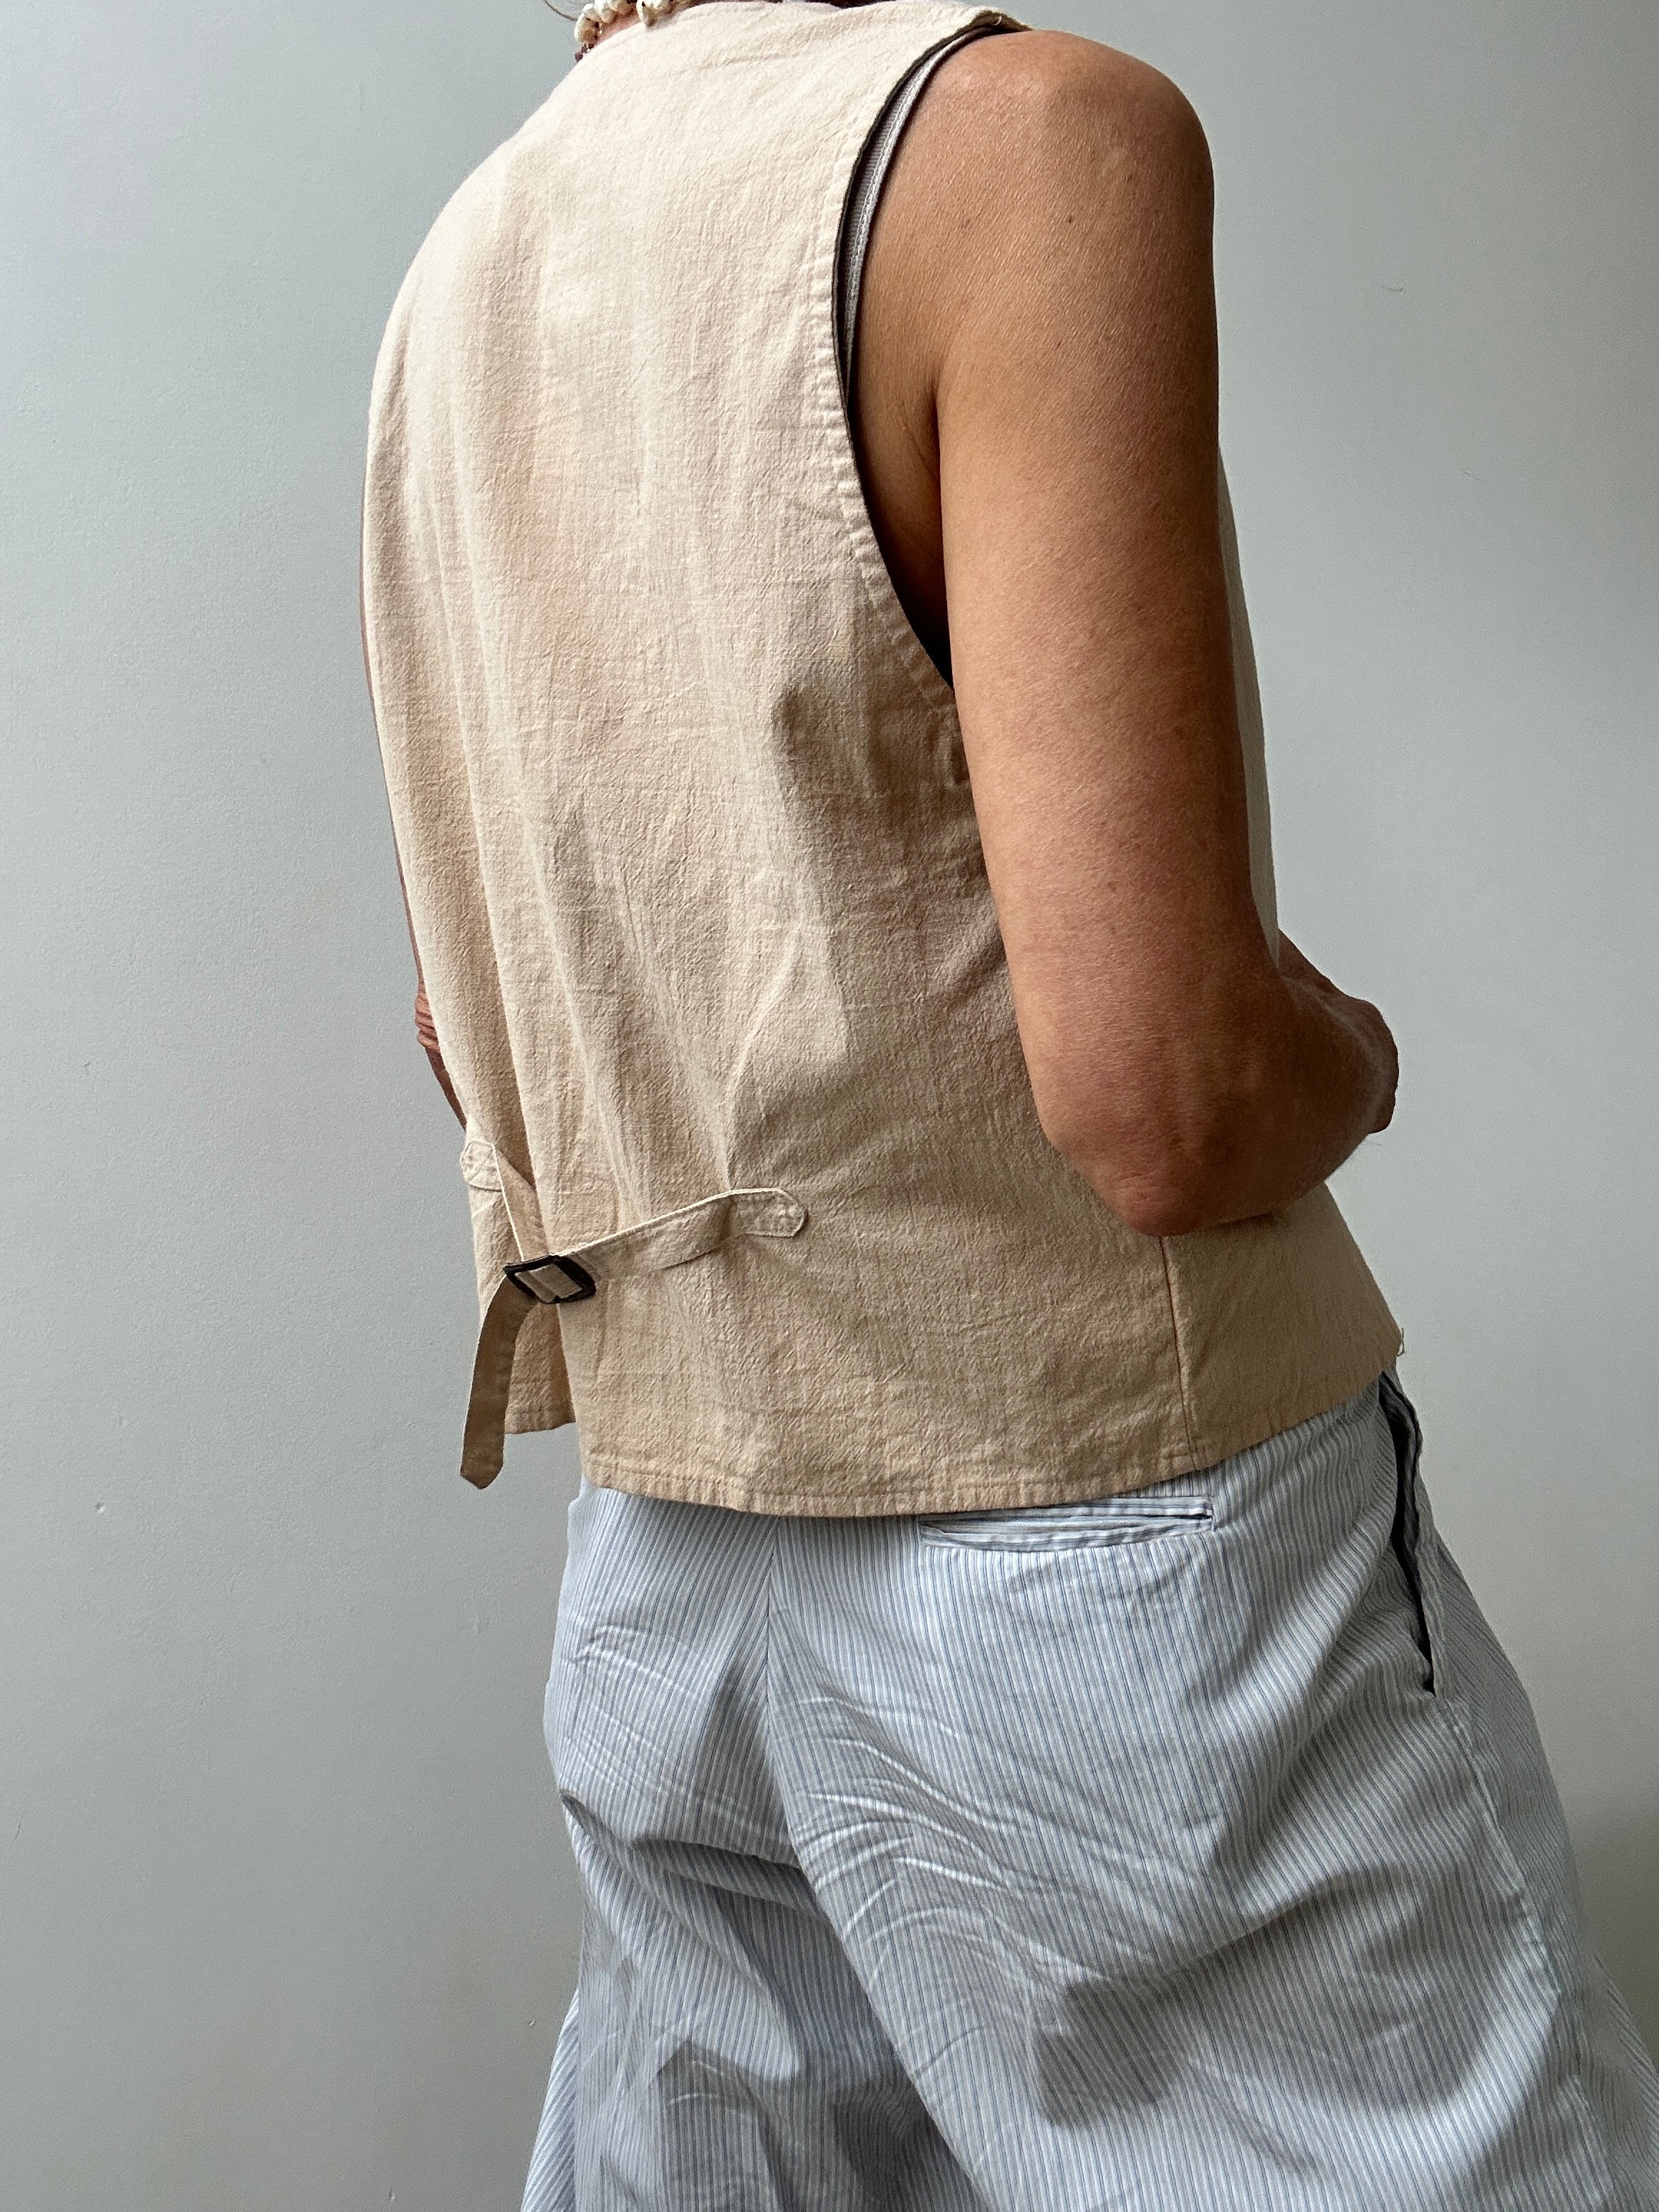 Future Nomads Vests Medium-Large Vintage Cotton Vest Apricot